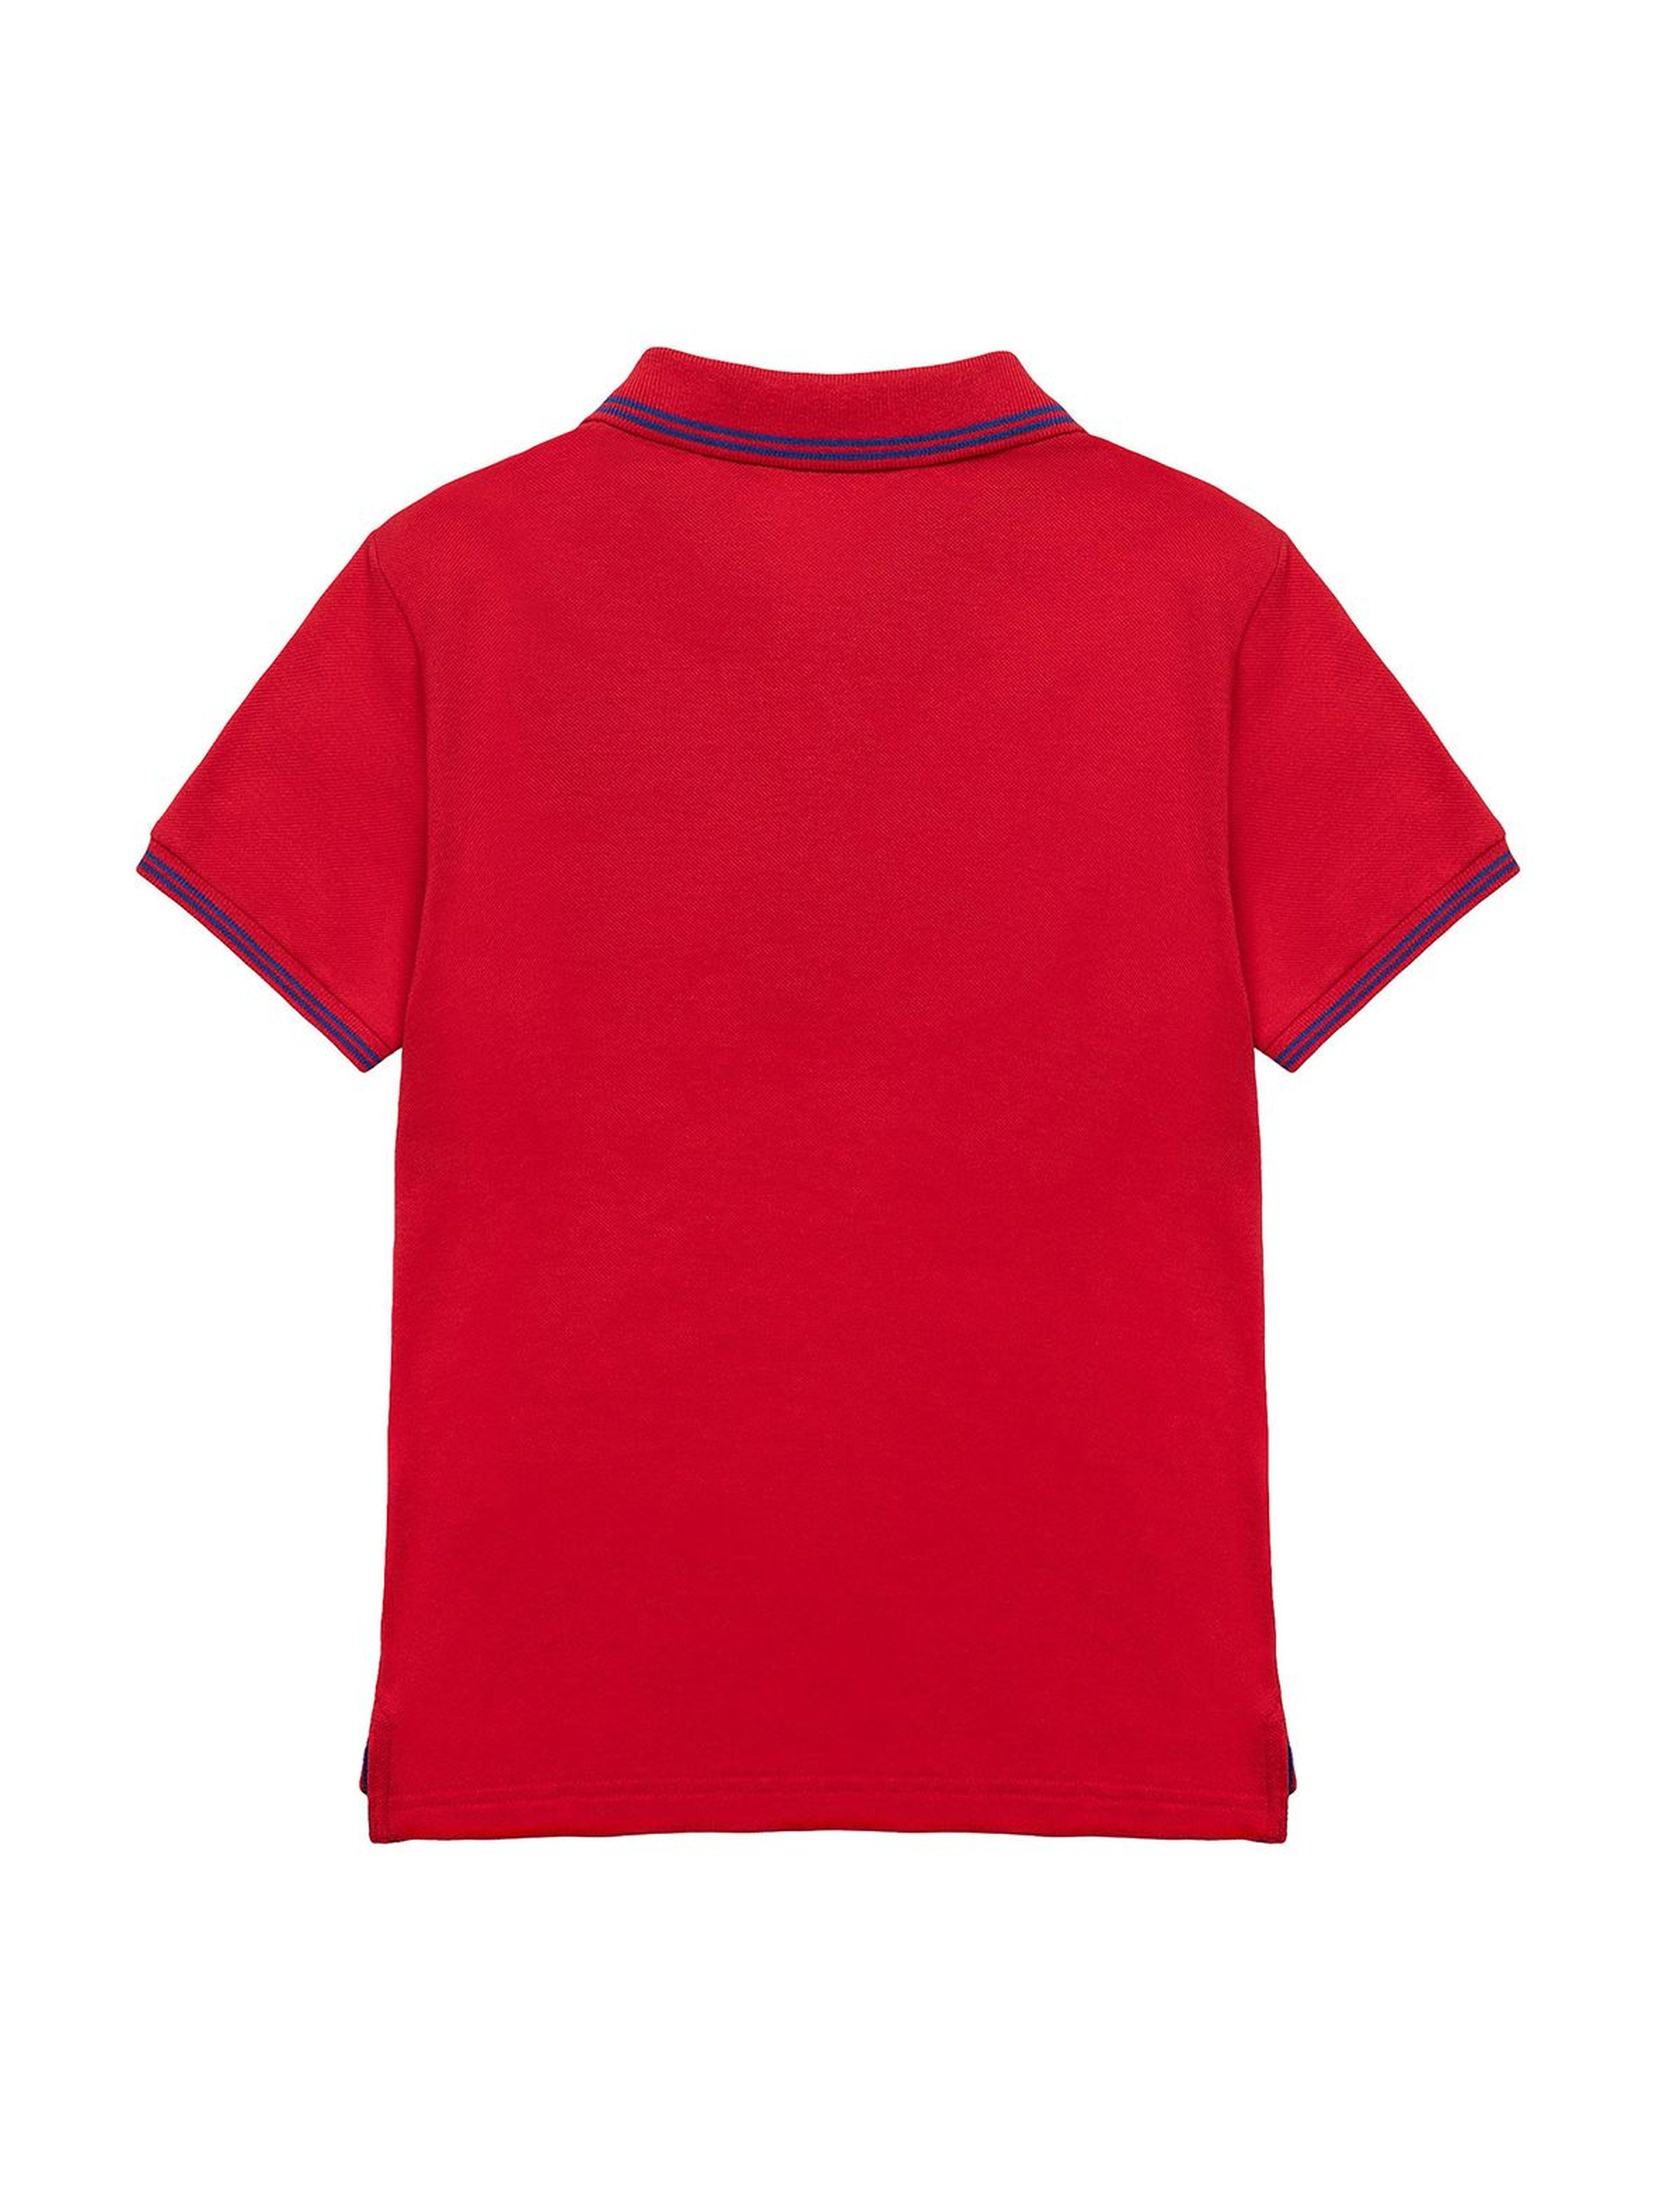 T-shirt niemowlęcy czerwony polo